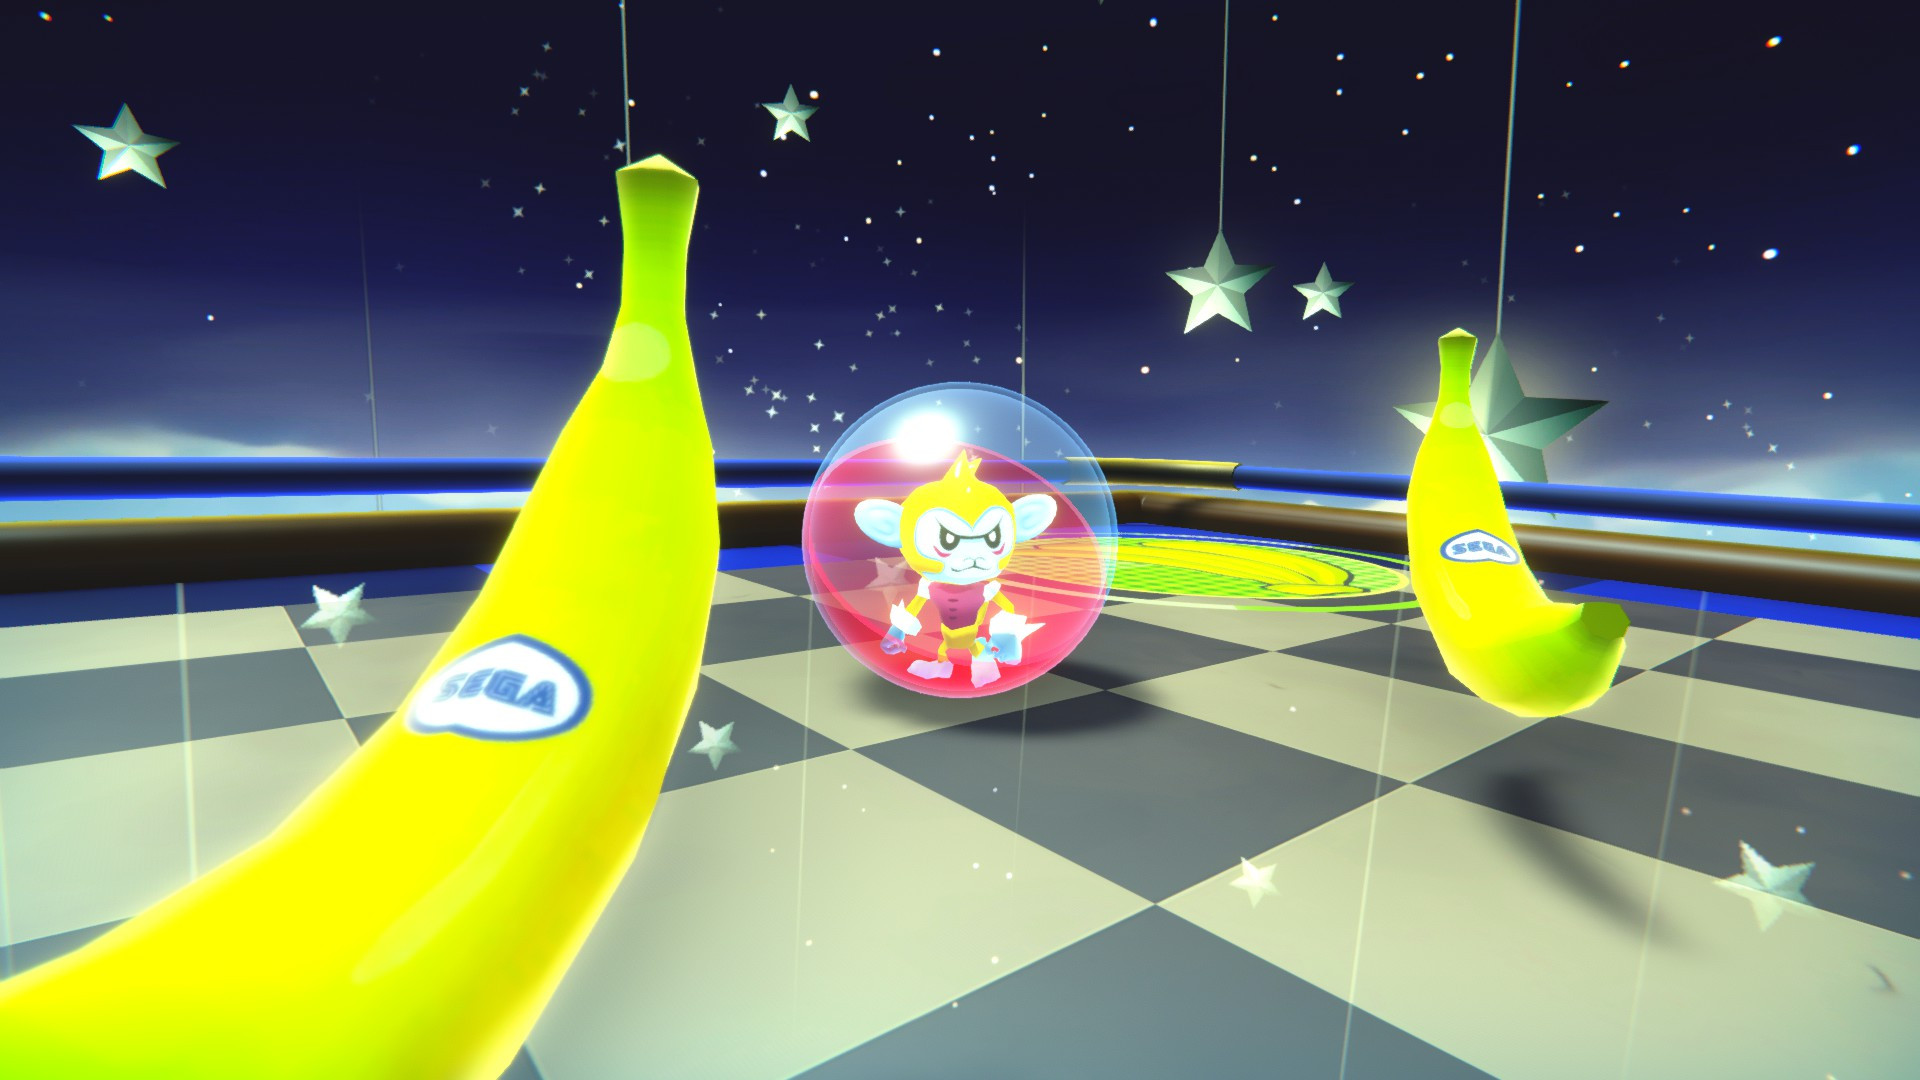 Super Monkey Ball Banana Mania Game Control Config + Modding Scene + Soundtrack - • The Modding Scene [WIP] - FFDEA1F